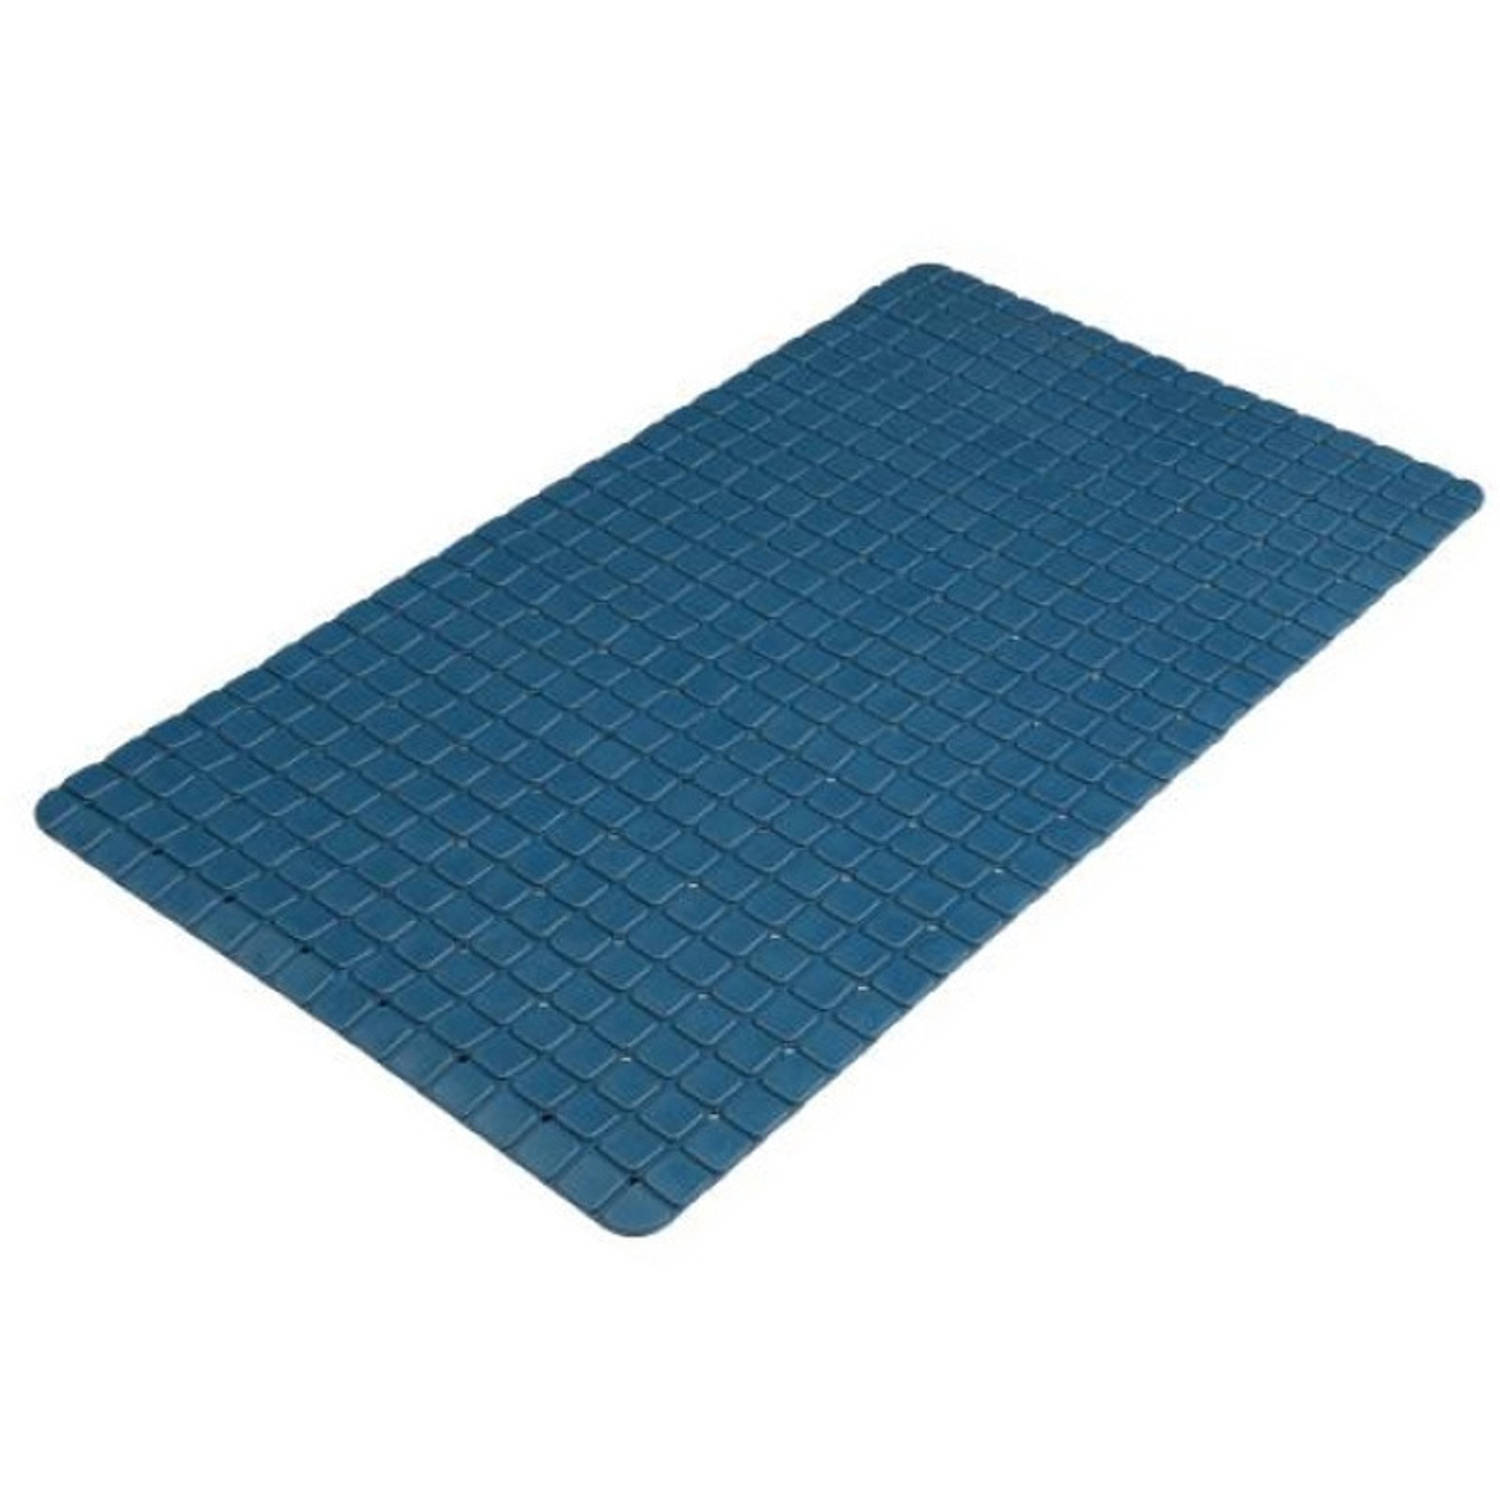 Urban Living Badkamer-douche anti slip mat rubber voor op de vloer donkerblauw 39 x 69 cm Badmatjes